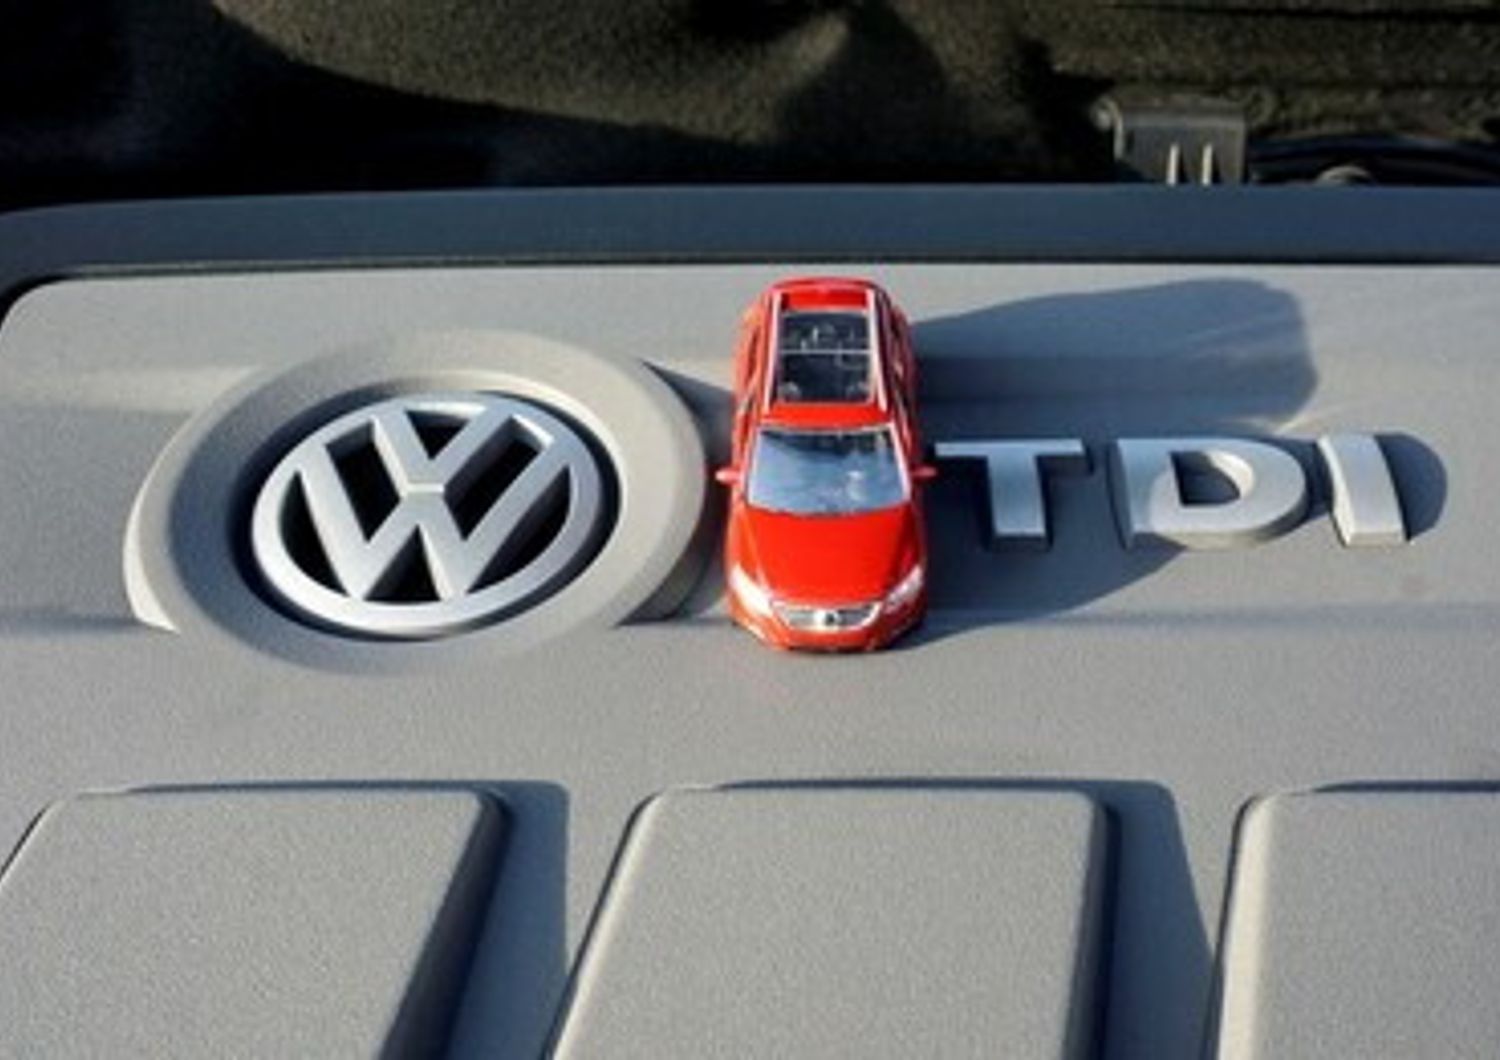 Volkswagen scaldalo dieselgate - afp